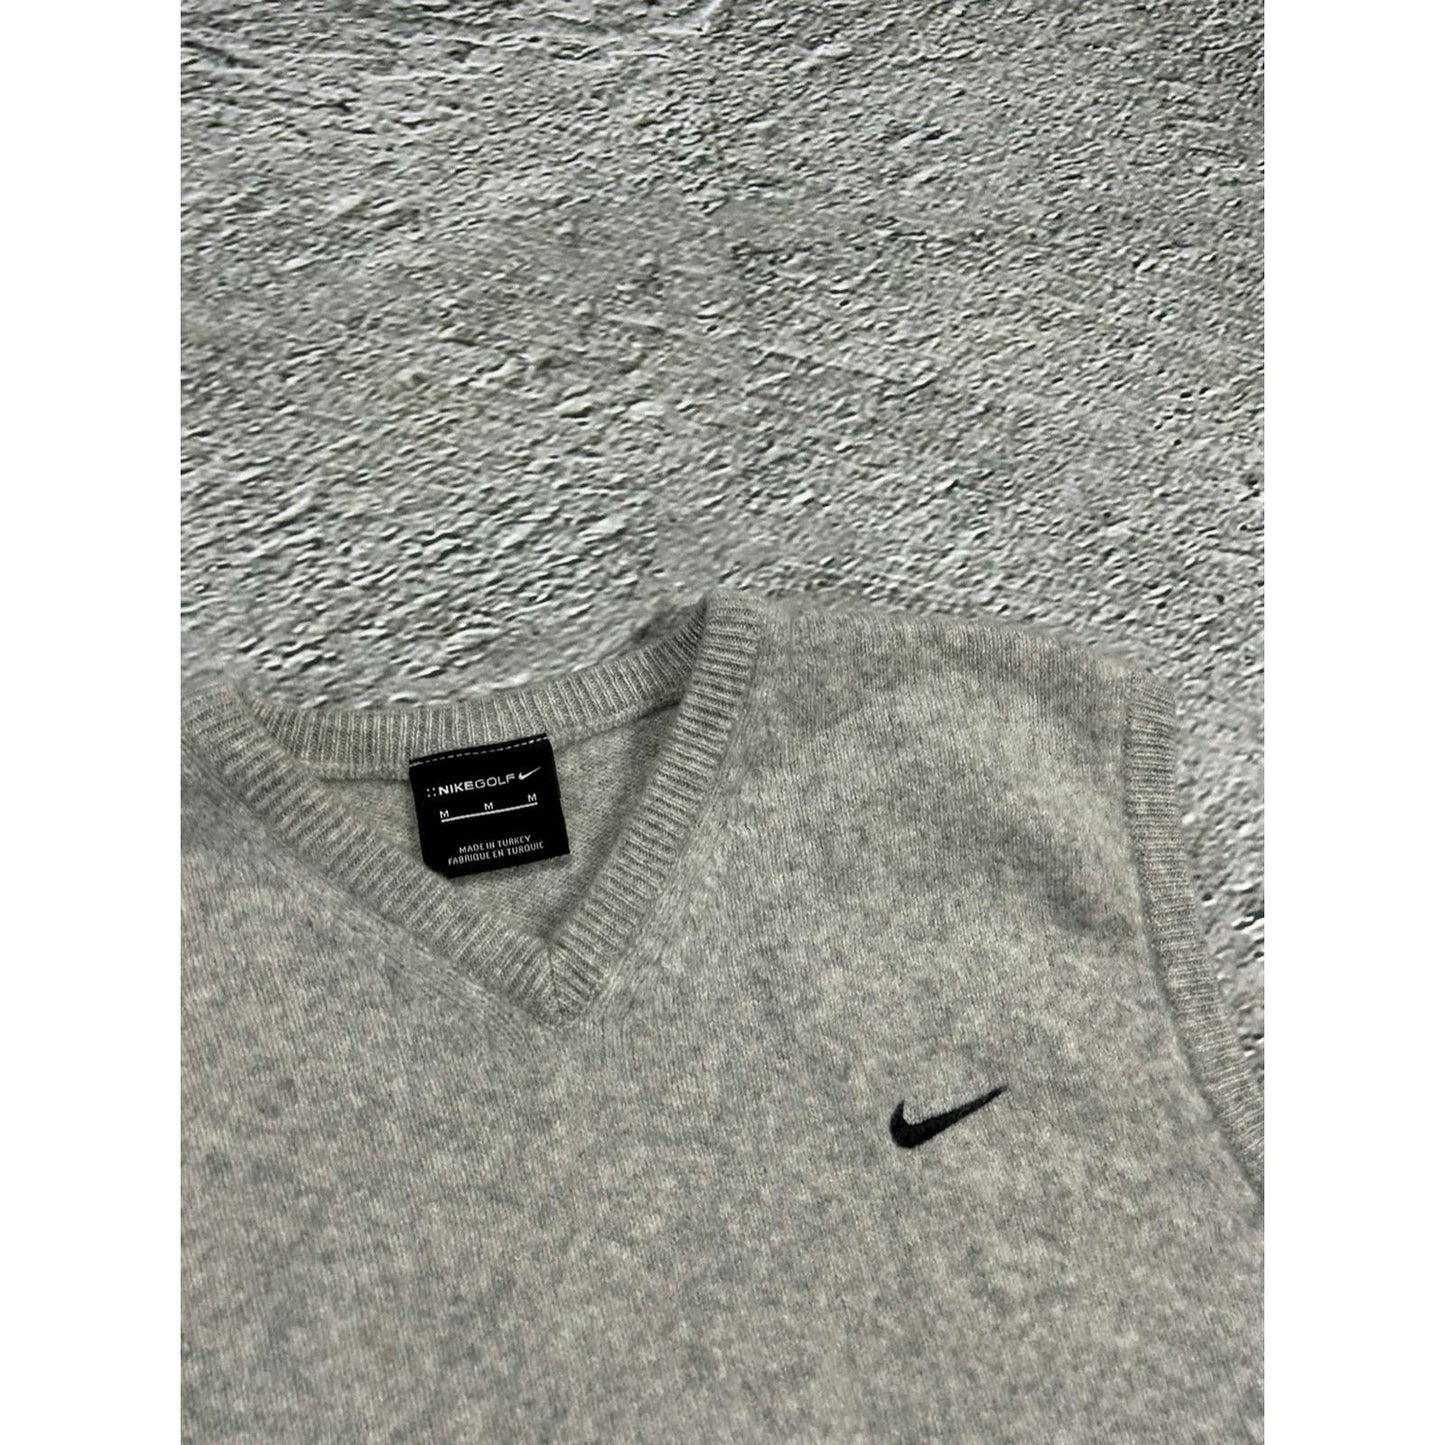 Nike vintage grey sweater vest tennis Y2K